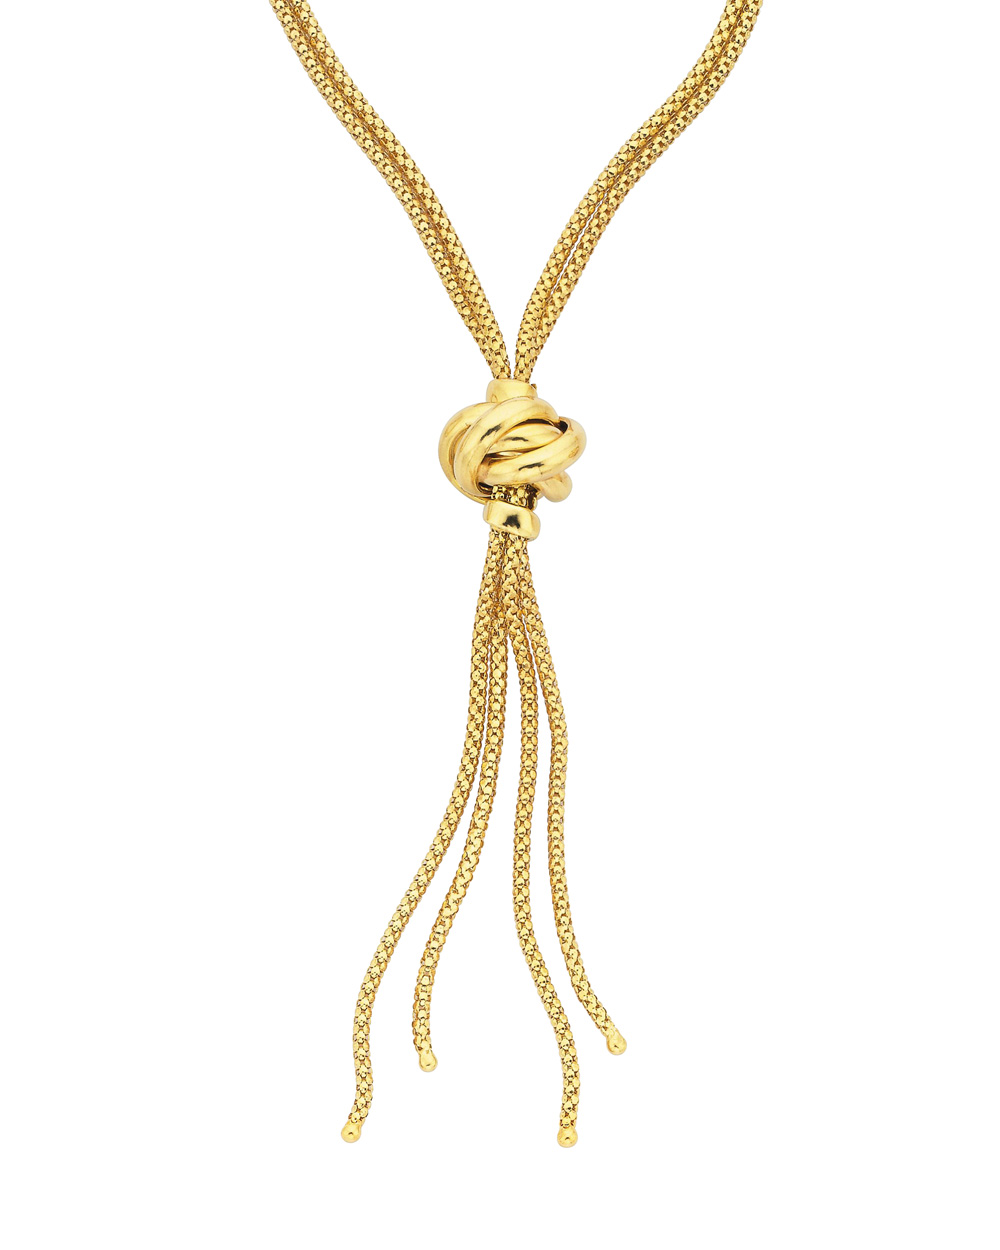 Necklace, $799, from Stewart Dawsons.